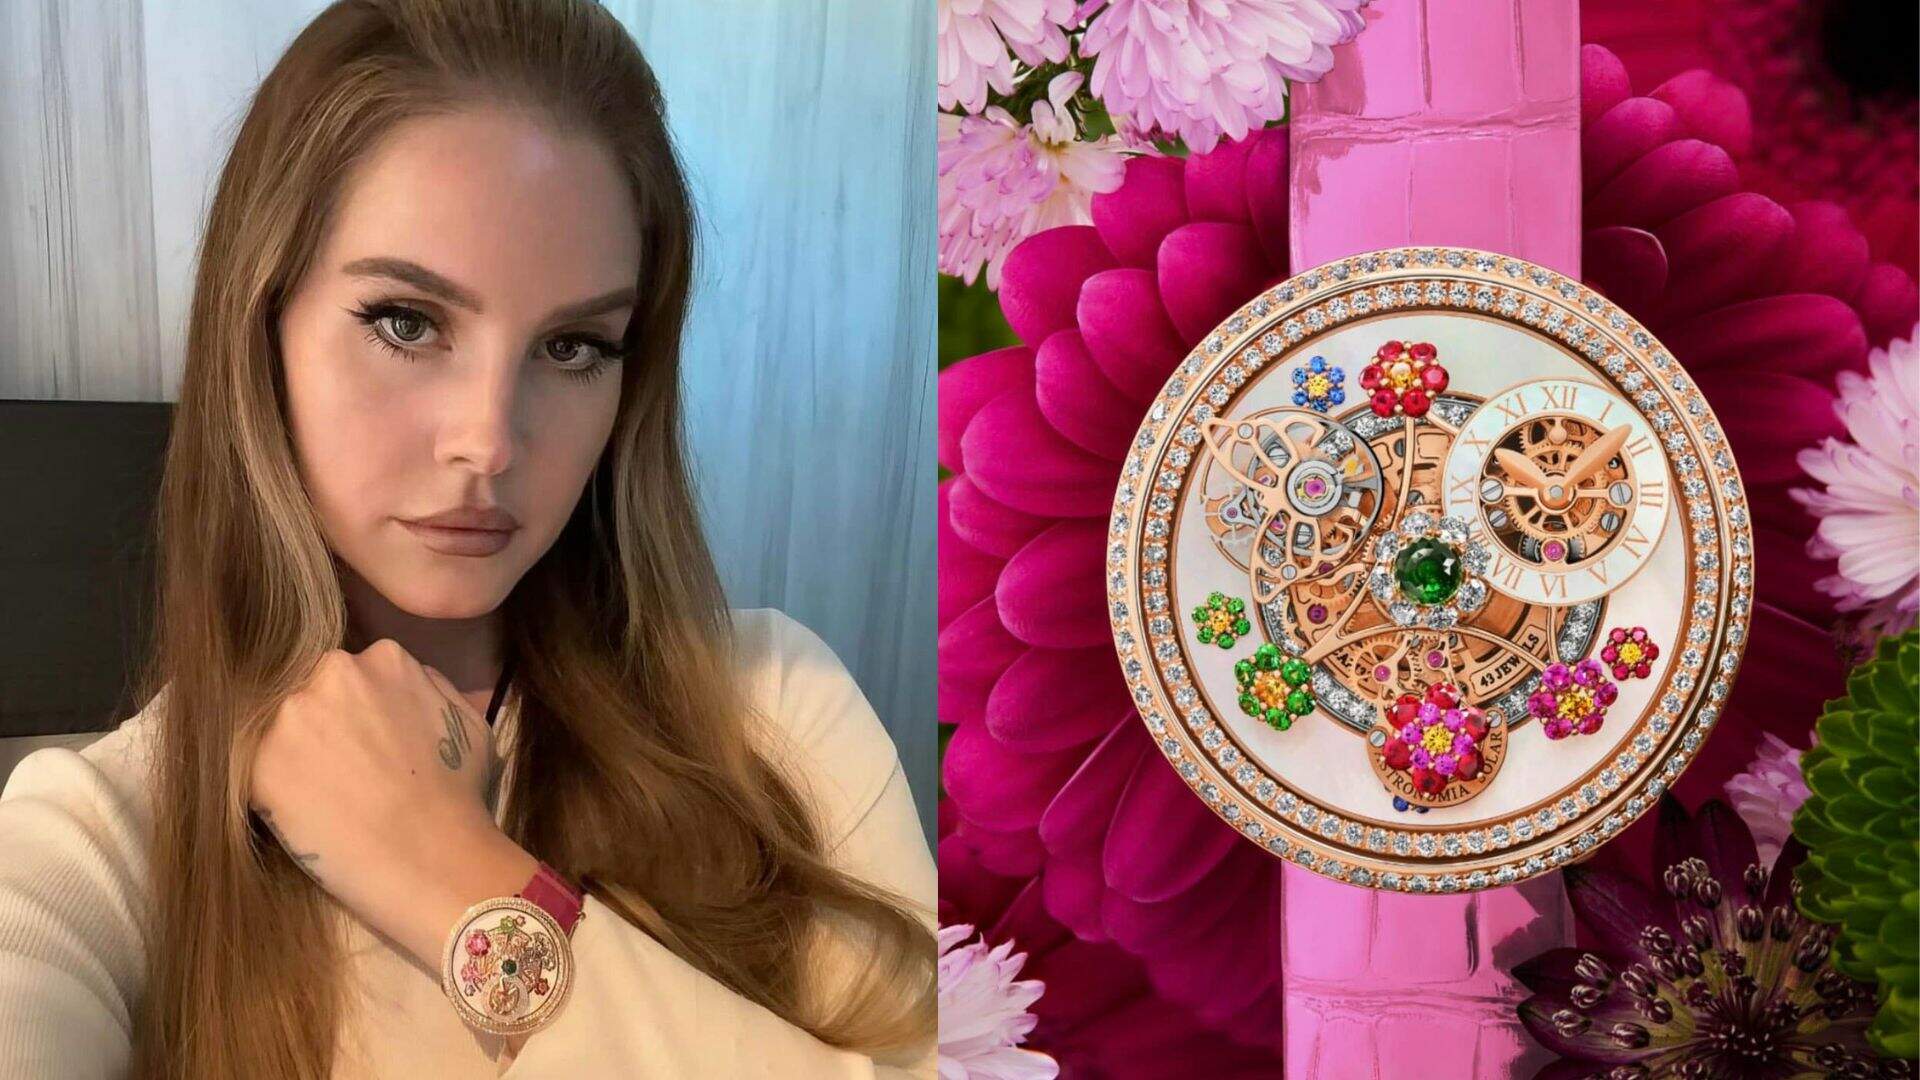 Lana Del Rey ostenta relógio com safiras rosas no valor de mais de R$ 2 milhões